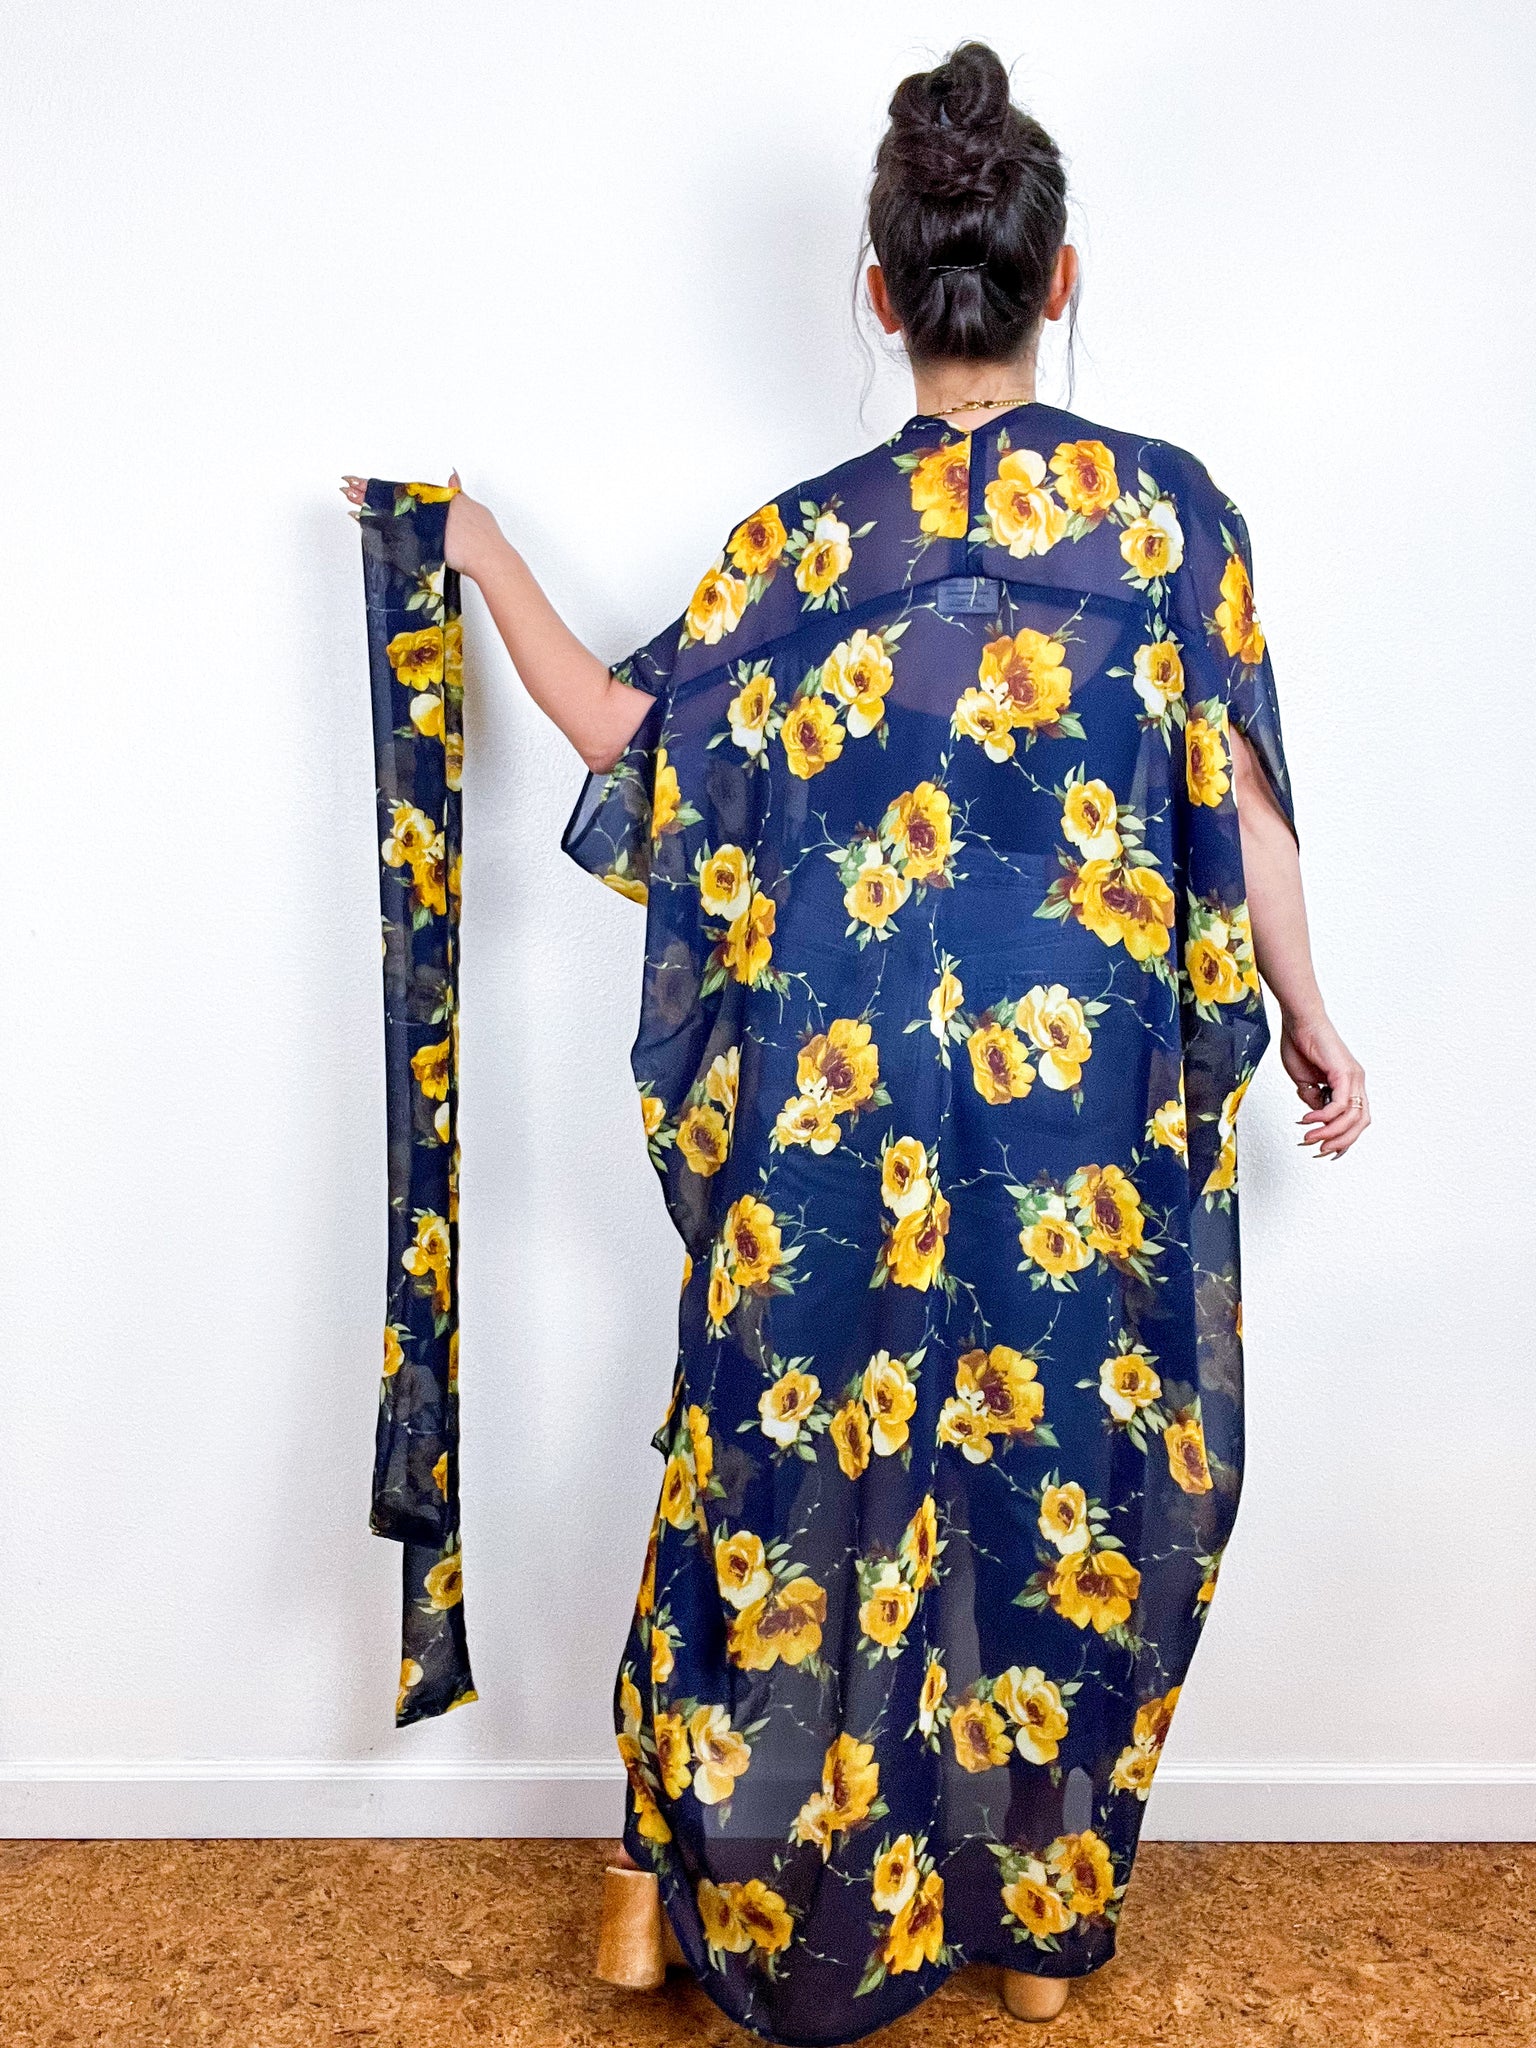 Print High Low Kimono Navy Yellow Floral Chiffon